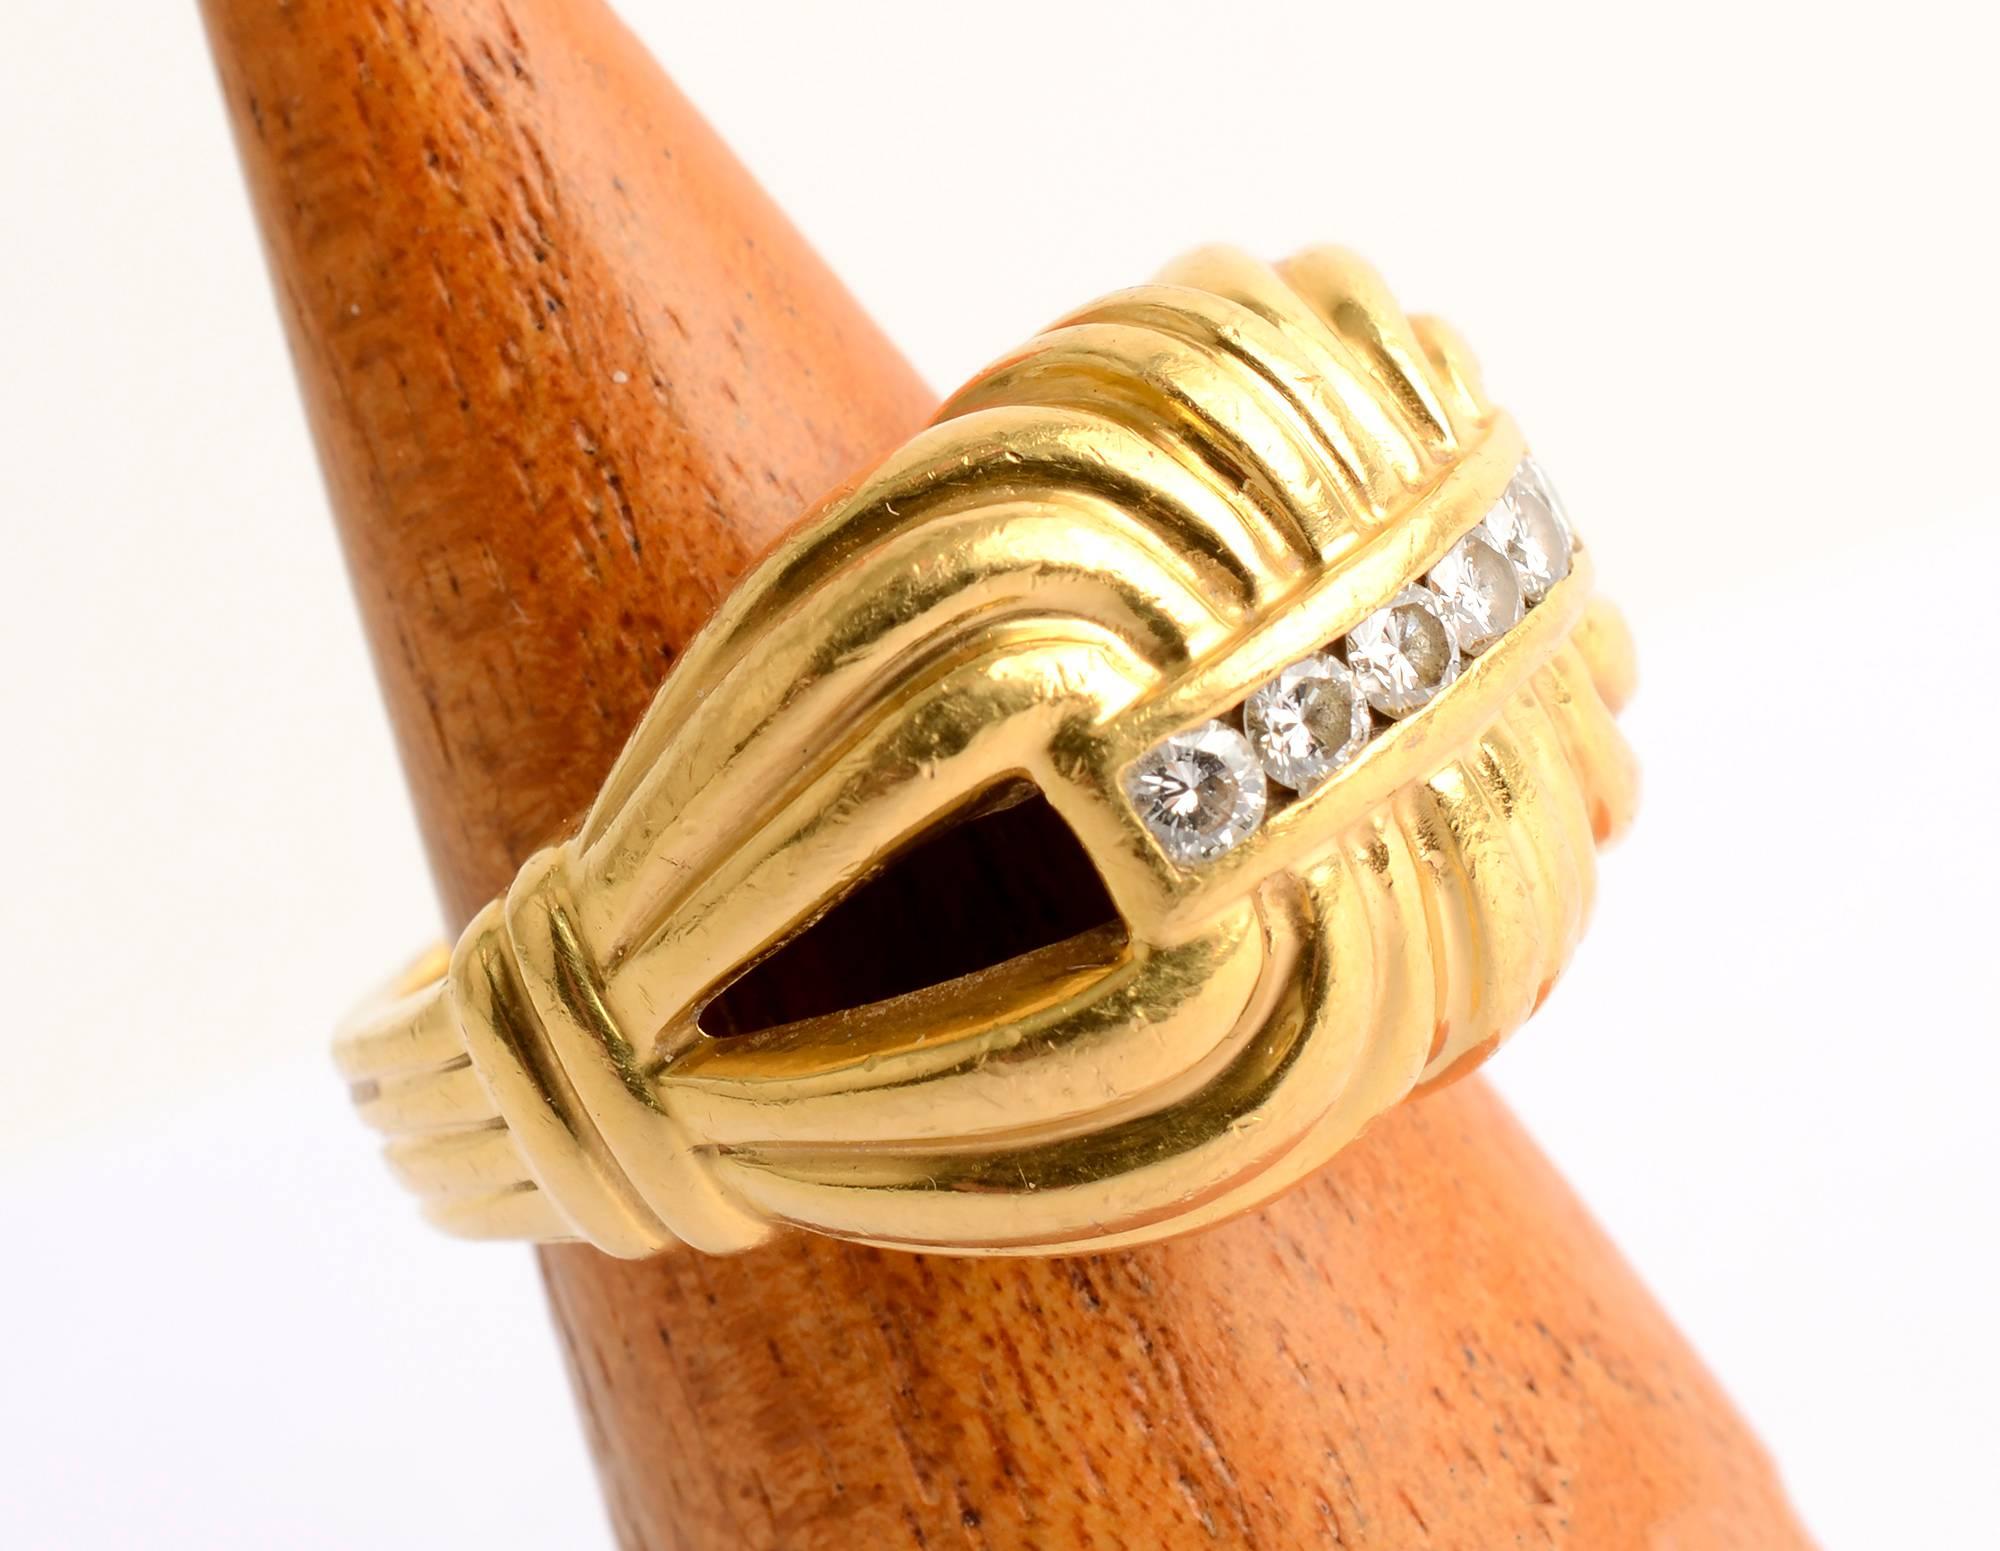 Ring im Scroll-Design von Lagos aus 22 Karat Gold mit sechs Diamanten. Das Streifendesign setzt sich über den gesamten Schaft fort.
Der Ring hat die Größe 7 1/2. Diese erhebliche Ring  würde bei Männern und Frauen gleichermaßen gut ankommen.